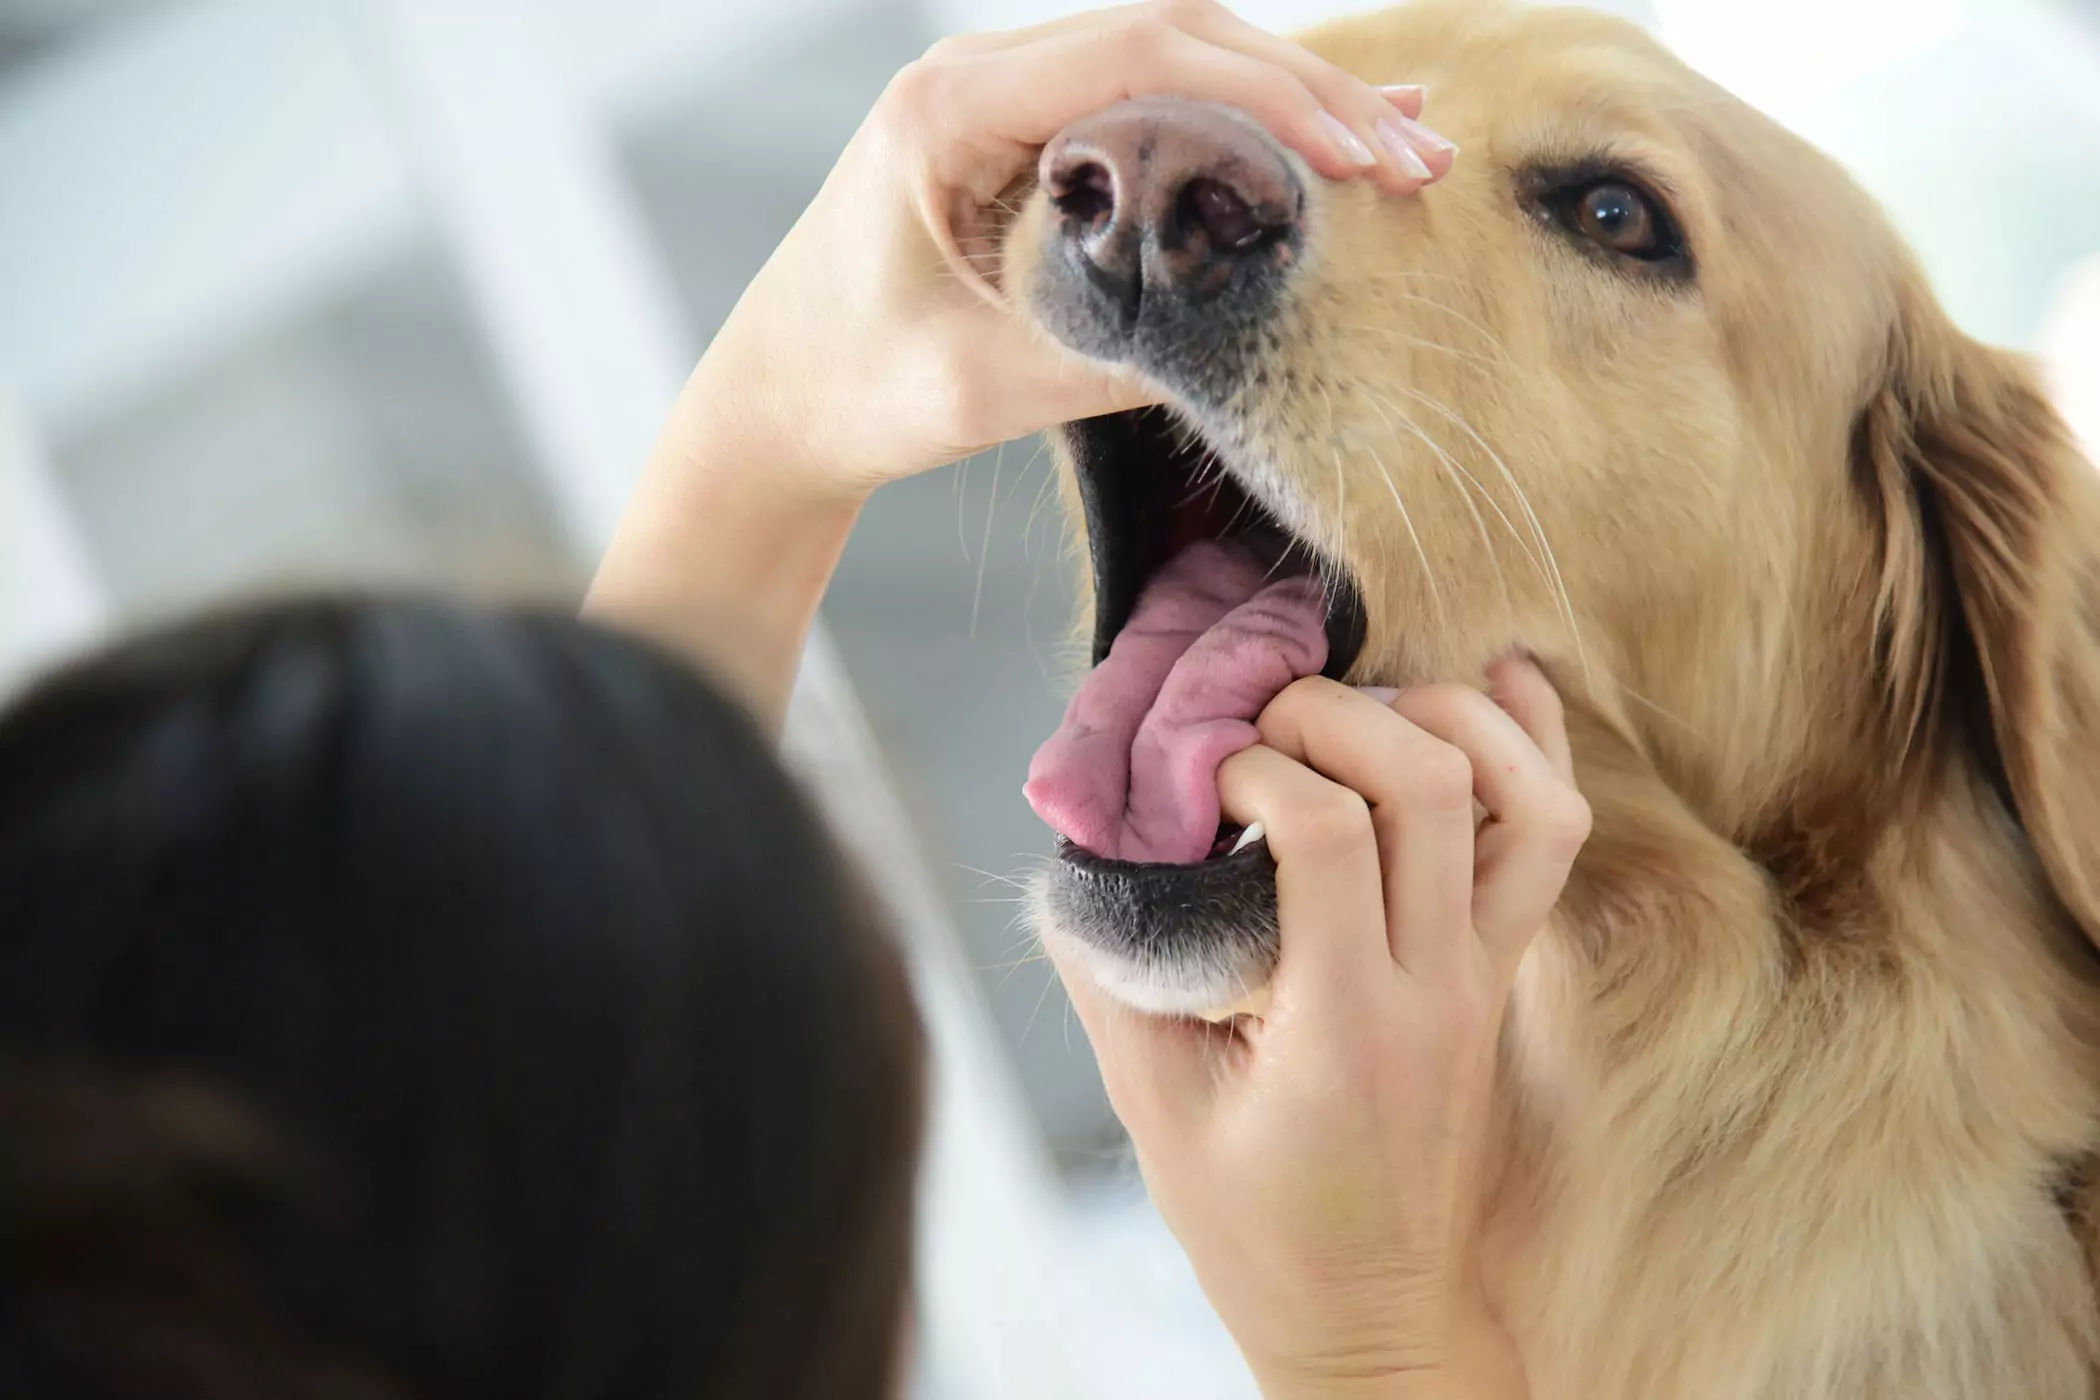 Czy jama ustna psa jest czystsza od ludzkiej? Czy jama ustna psa jest czystsza od ludzkiej? To jest skradzione pojęcie, nie można ich porównać.